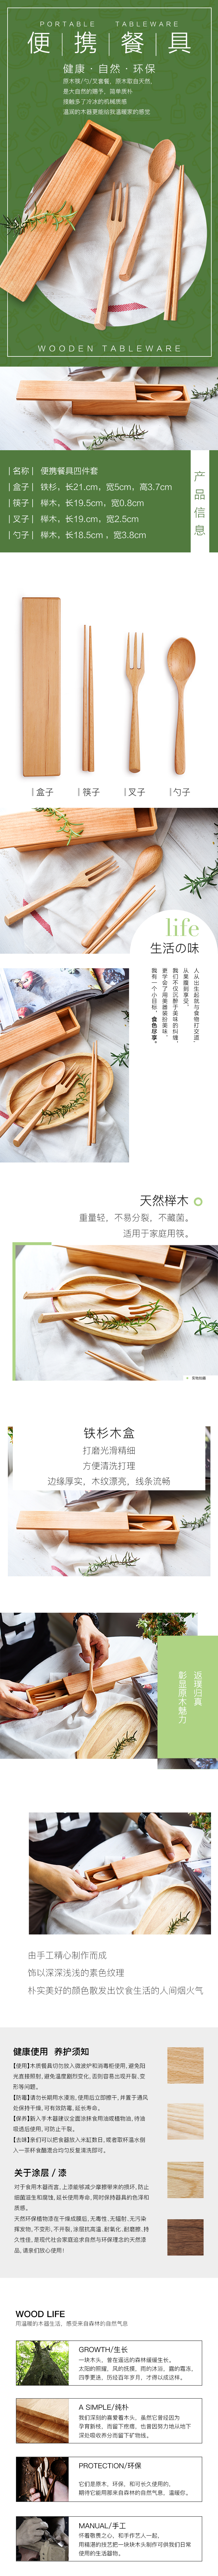 淘宝美工梨子简约日系餐具三件套木质家具刀叉筷子勺子原木作品